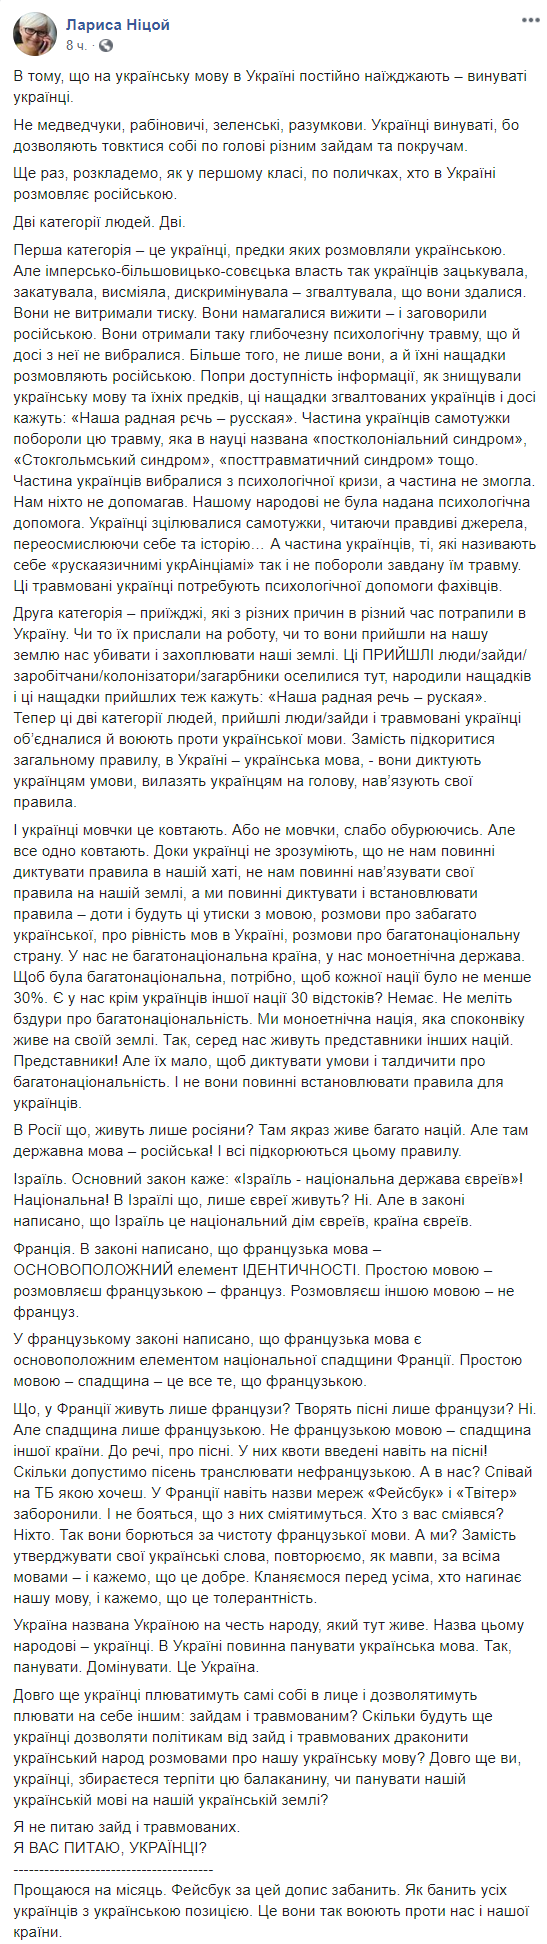 Ницой заявила, что украинцы сами виноваты в том, что украинский язык не уважают 